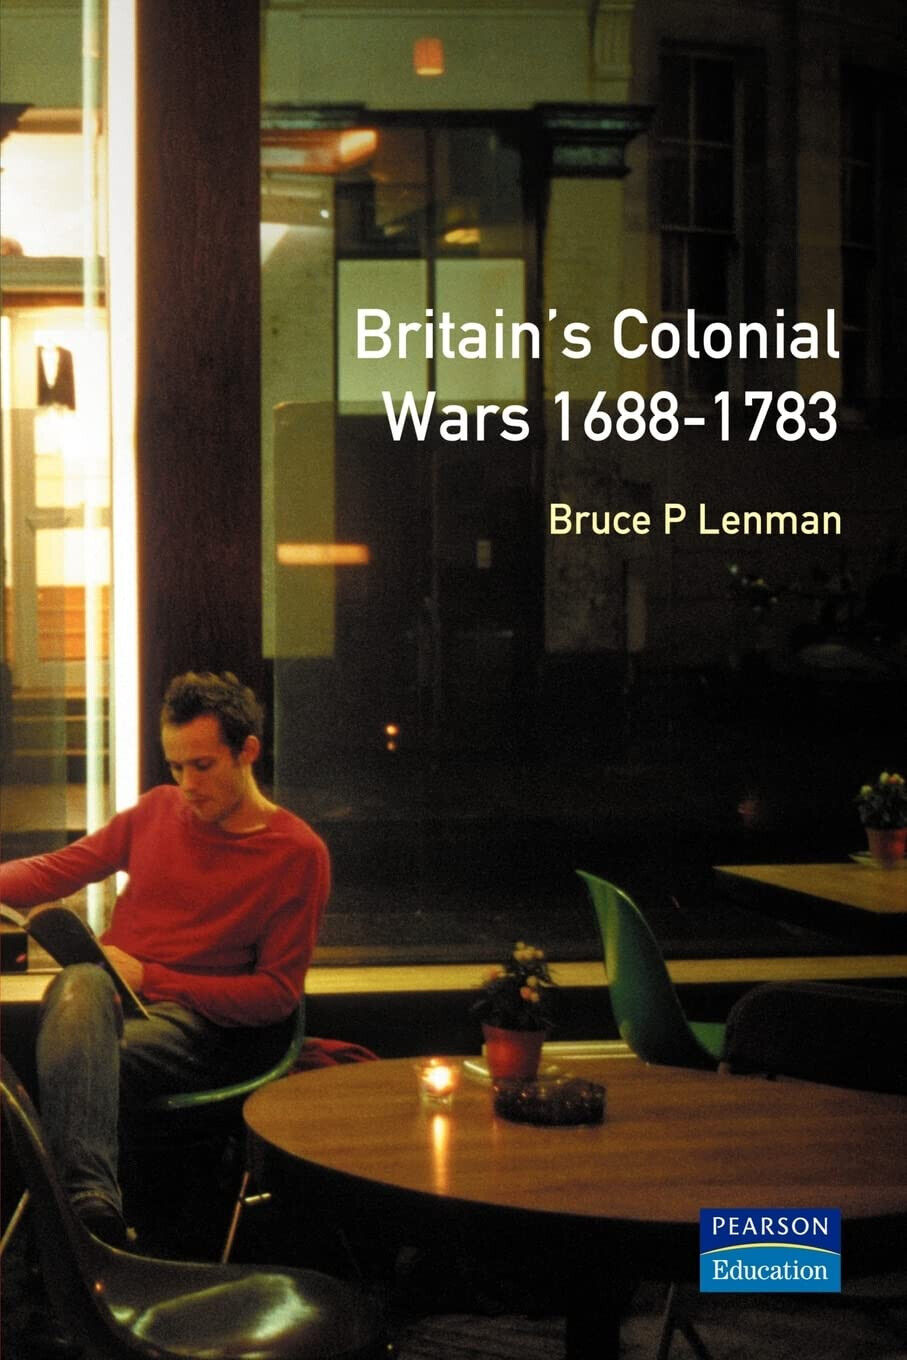 Britain's Colonial Wars, 1688-1783 - Bruce Lenman - Palgrave, 200